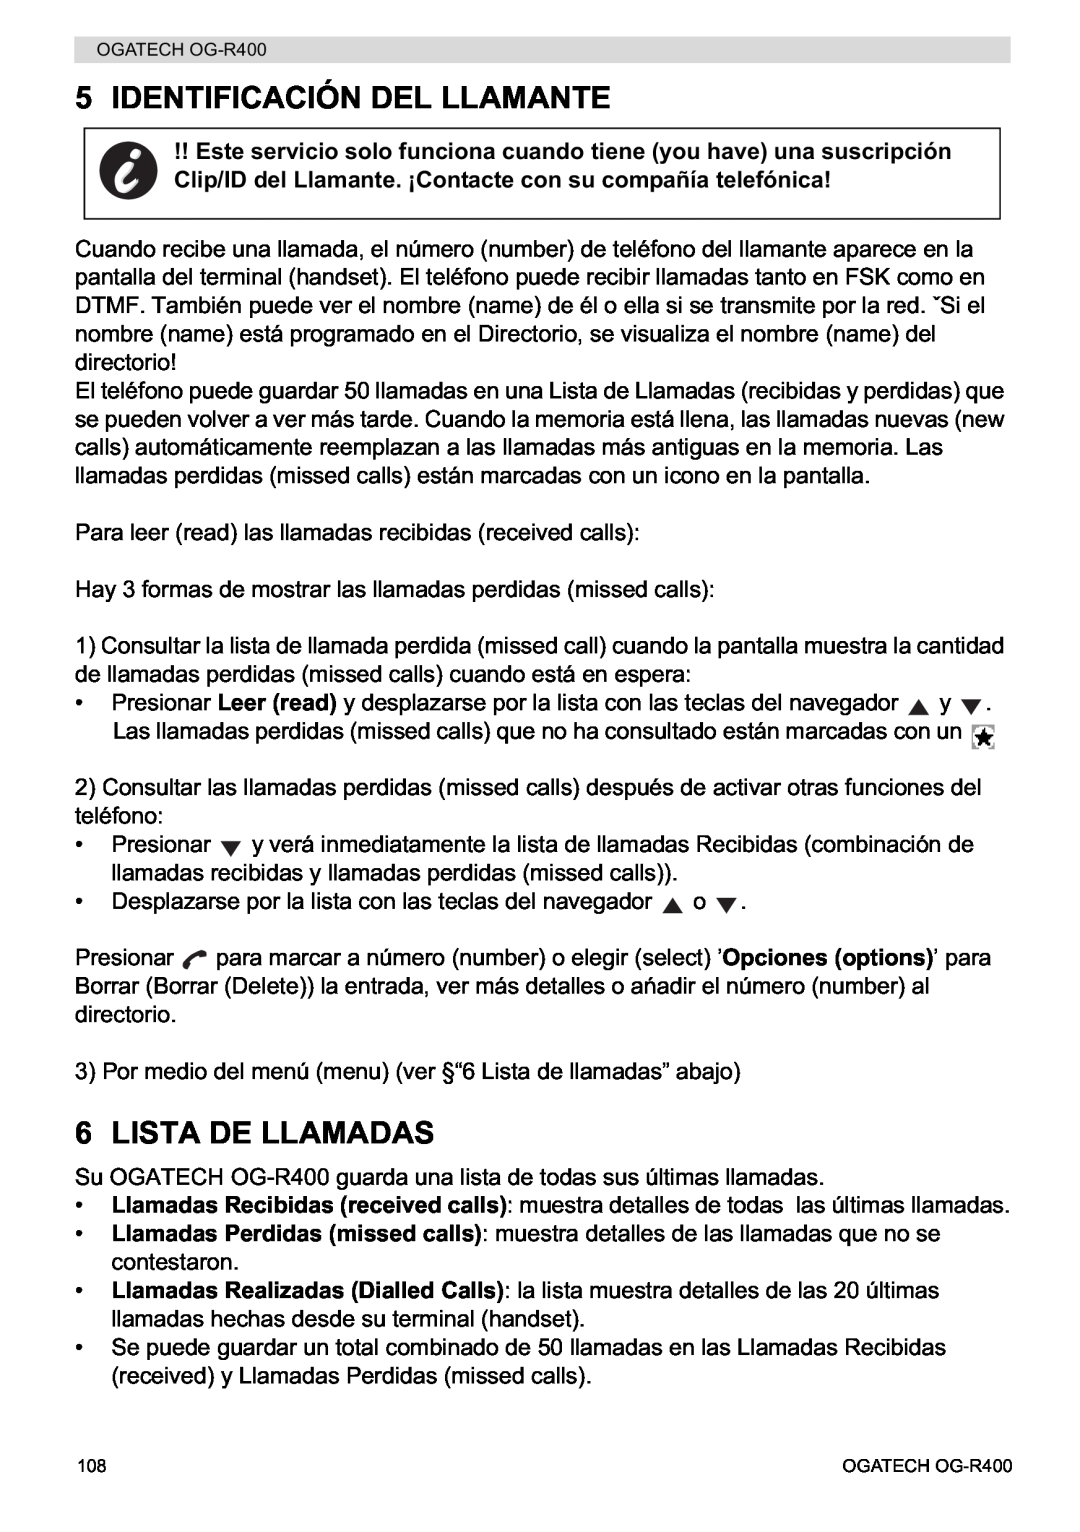 Topcom OG-R400 manual Identificación Del Llamante, Lista De Llamadas 